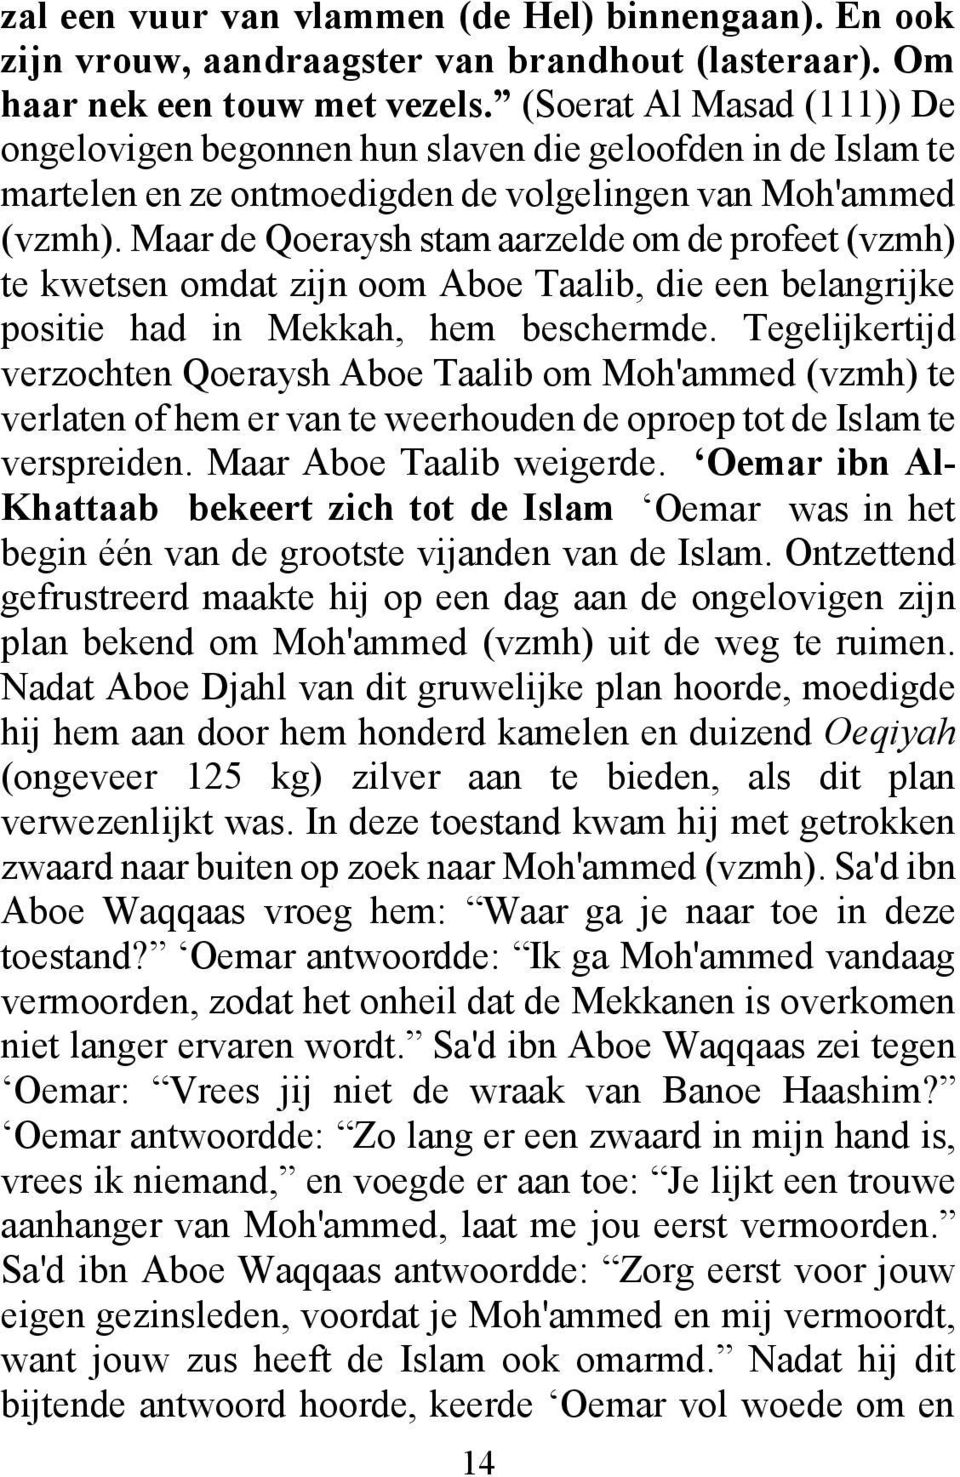 Maar de Qoeraysh stam aarzelde om de profeet (vzmh) te kwetsen omdat zijn oom Aboe Taalib, die een belangrijke positie had in Mekkah, hem beschermde.